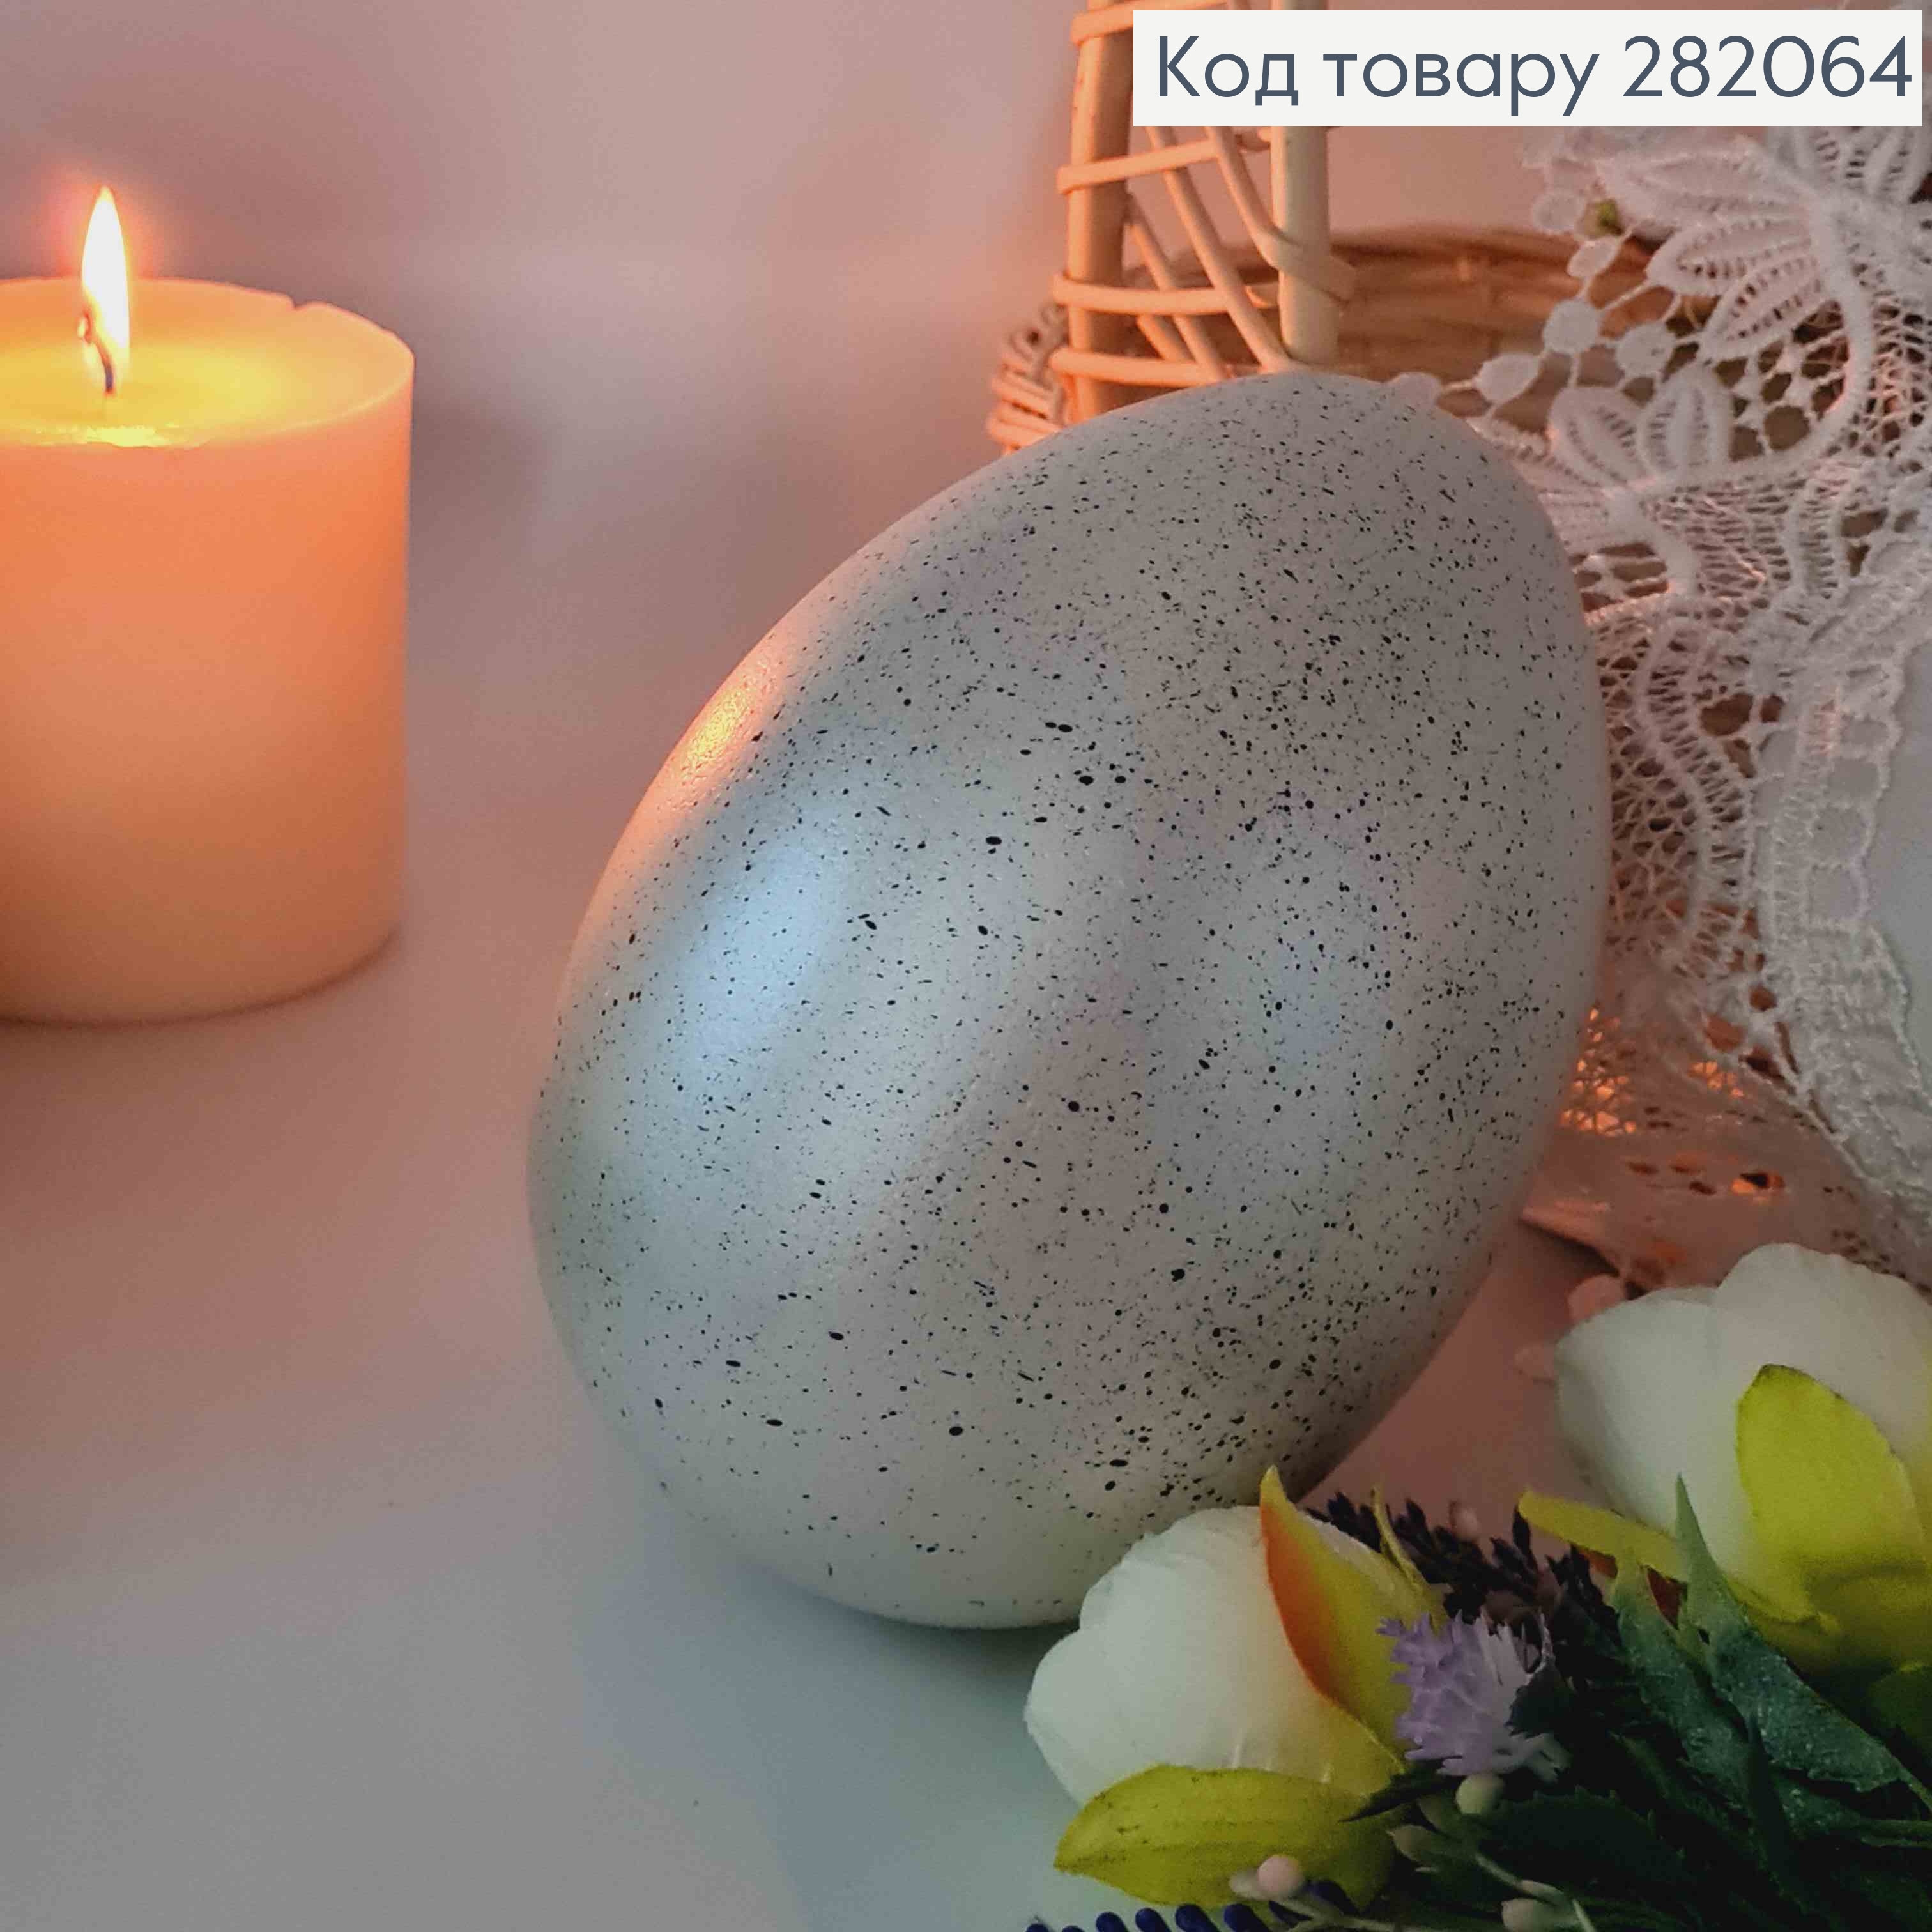 Яйцо страусиное, с черным вкраплением Серебряного цвета, 15*10см 282064 фото 2